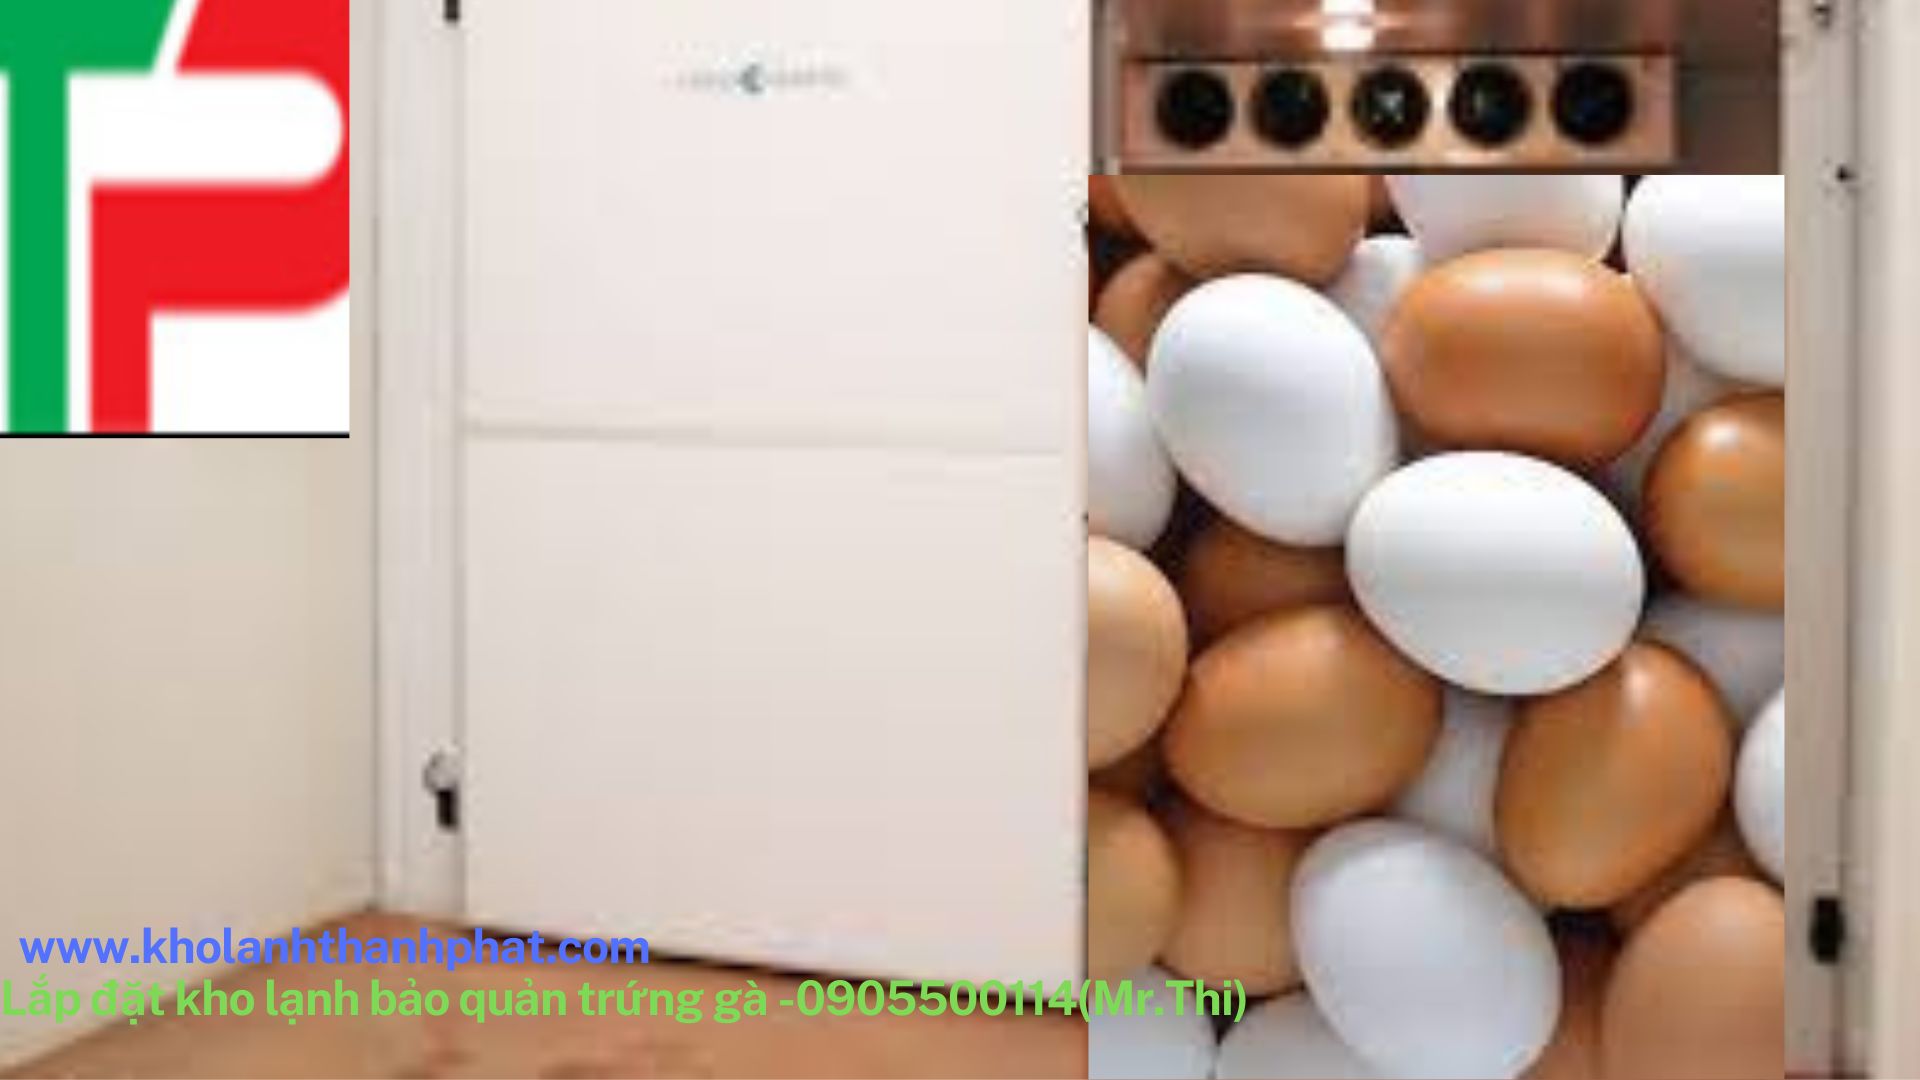  Lắp đặt kho lạnh bảo quản trứng gà.